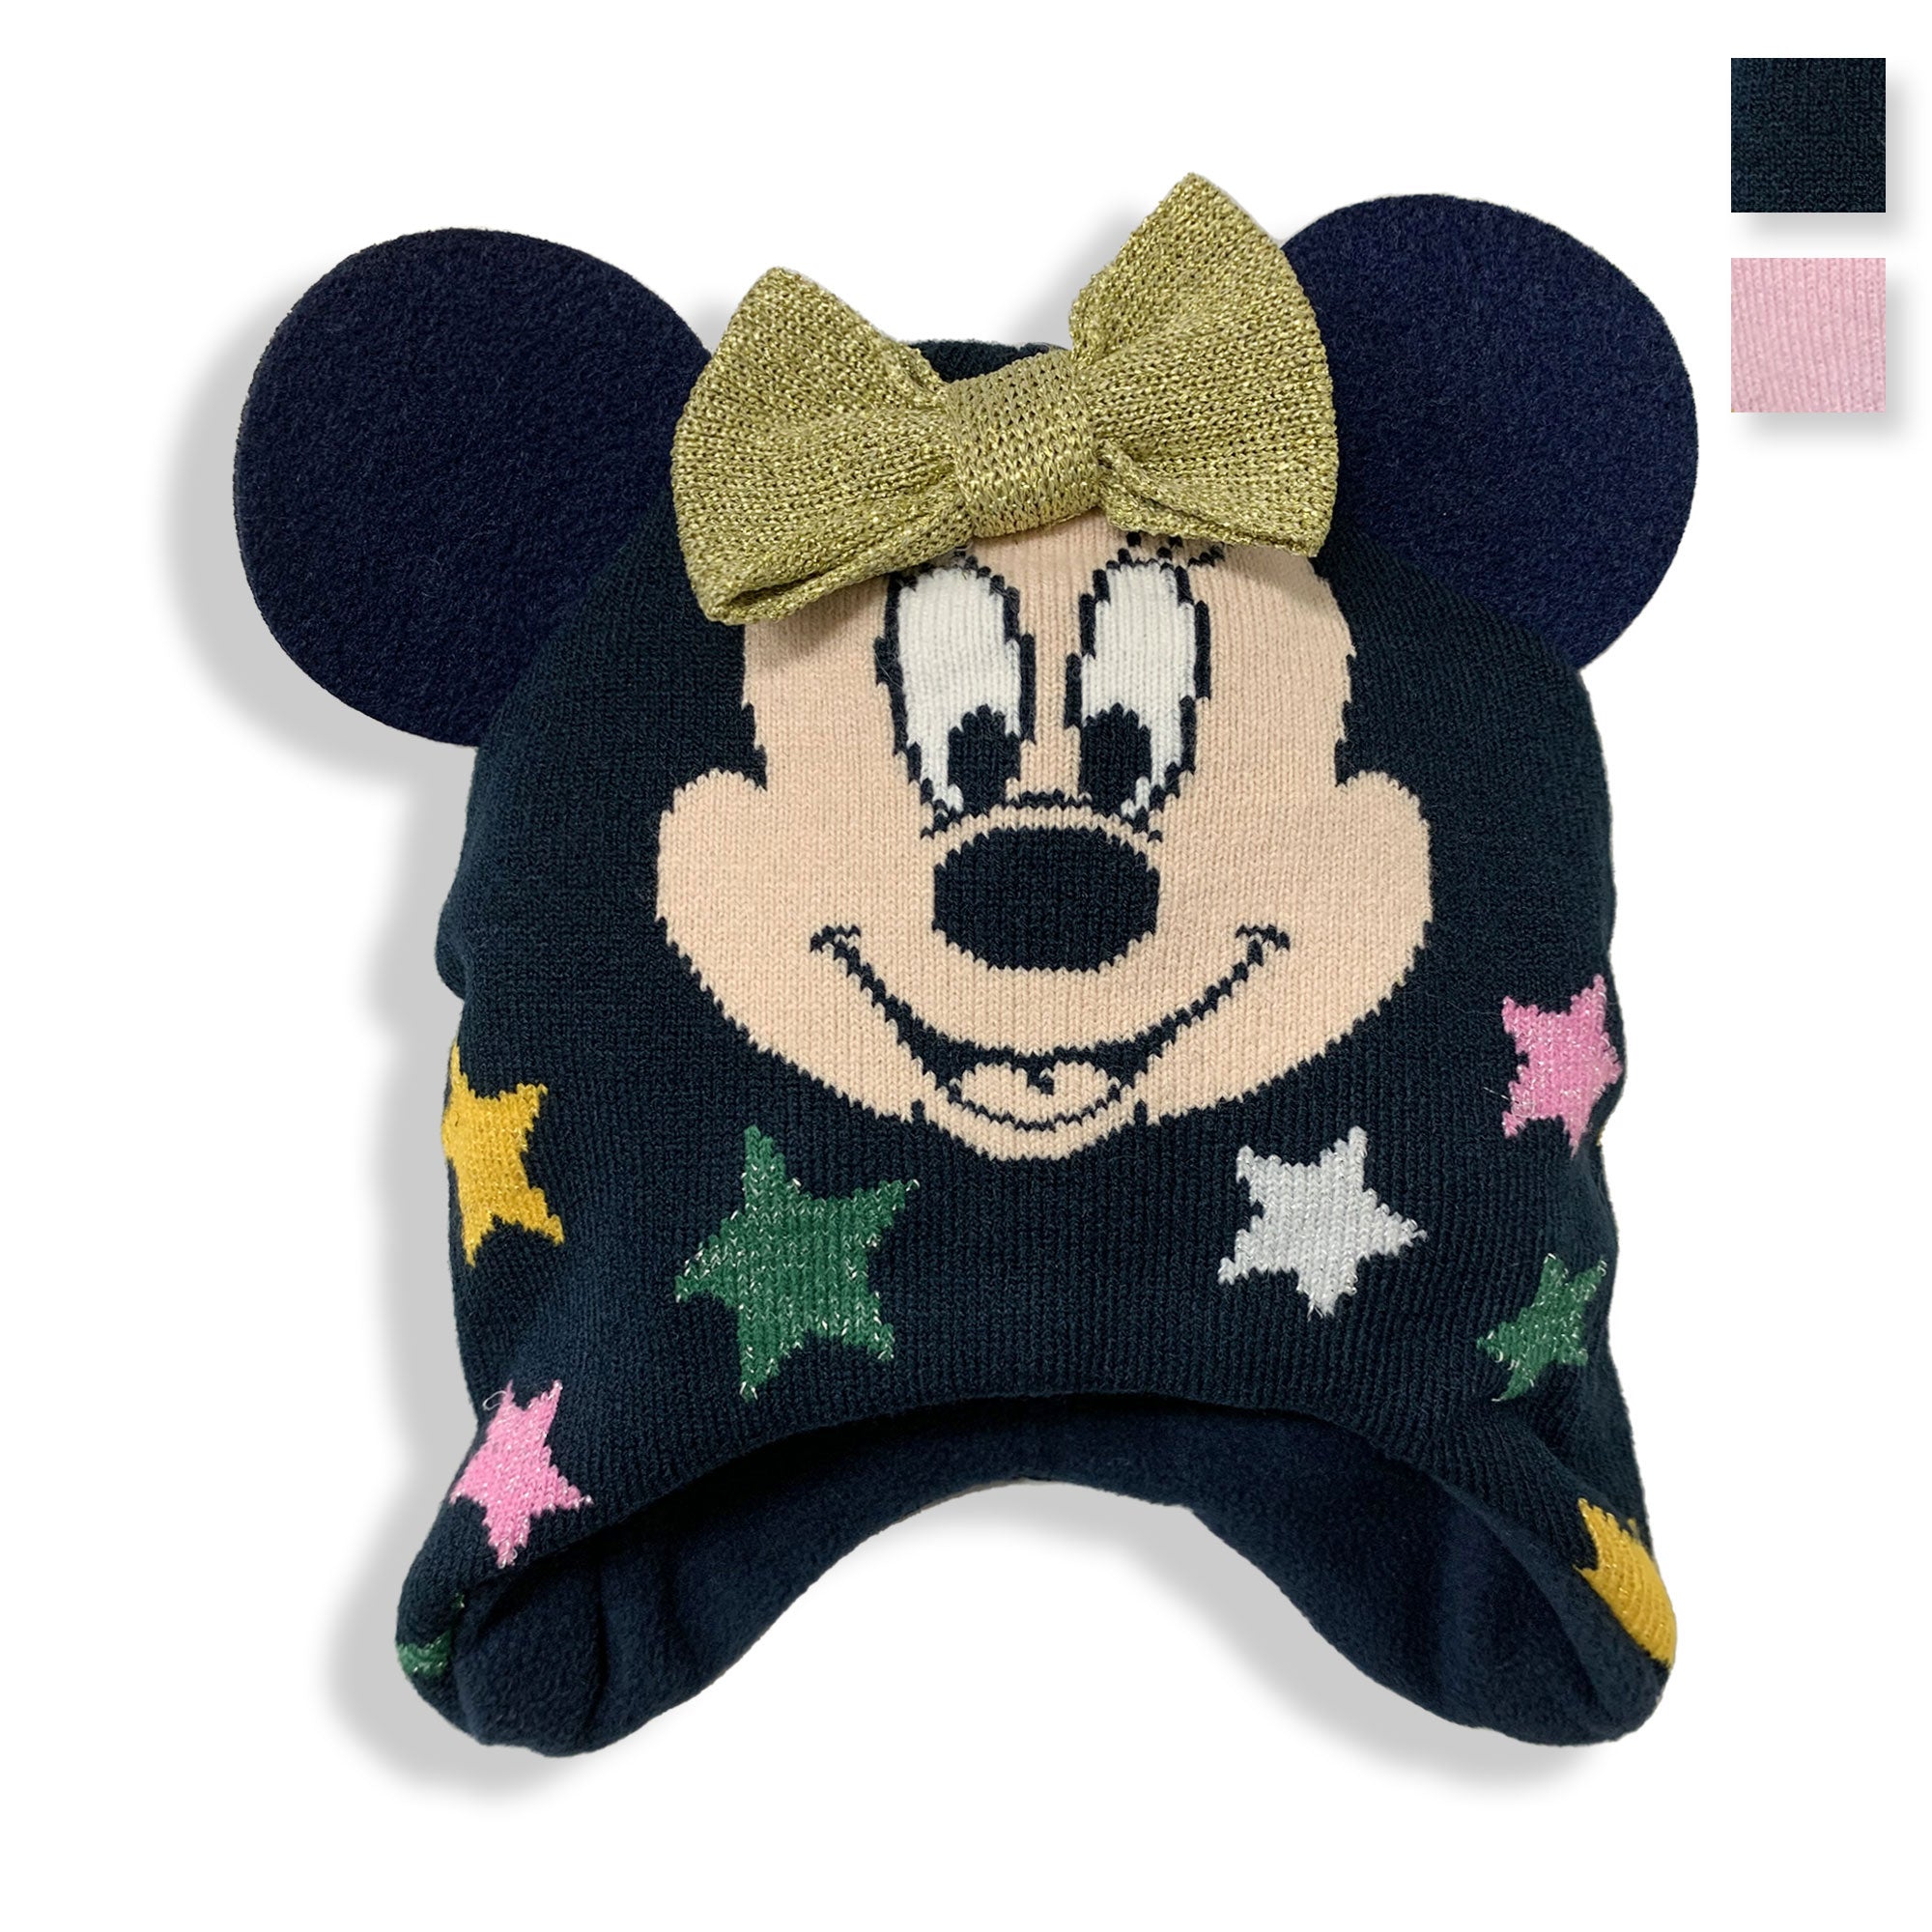 Cappello Disney Minnie Mouse invernale cappellino neonato bimba glitter 5897